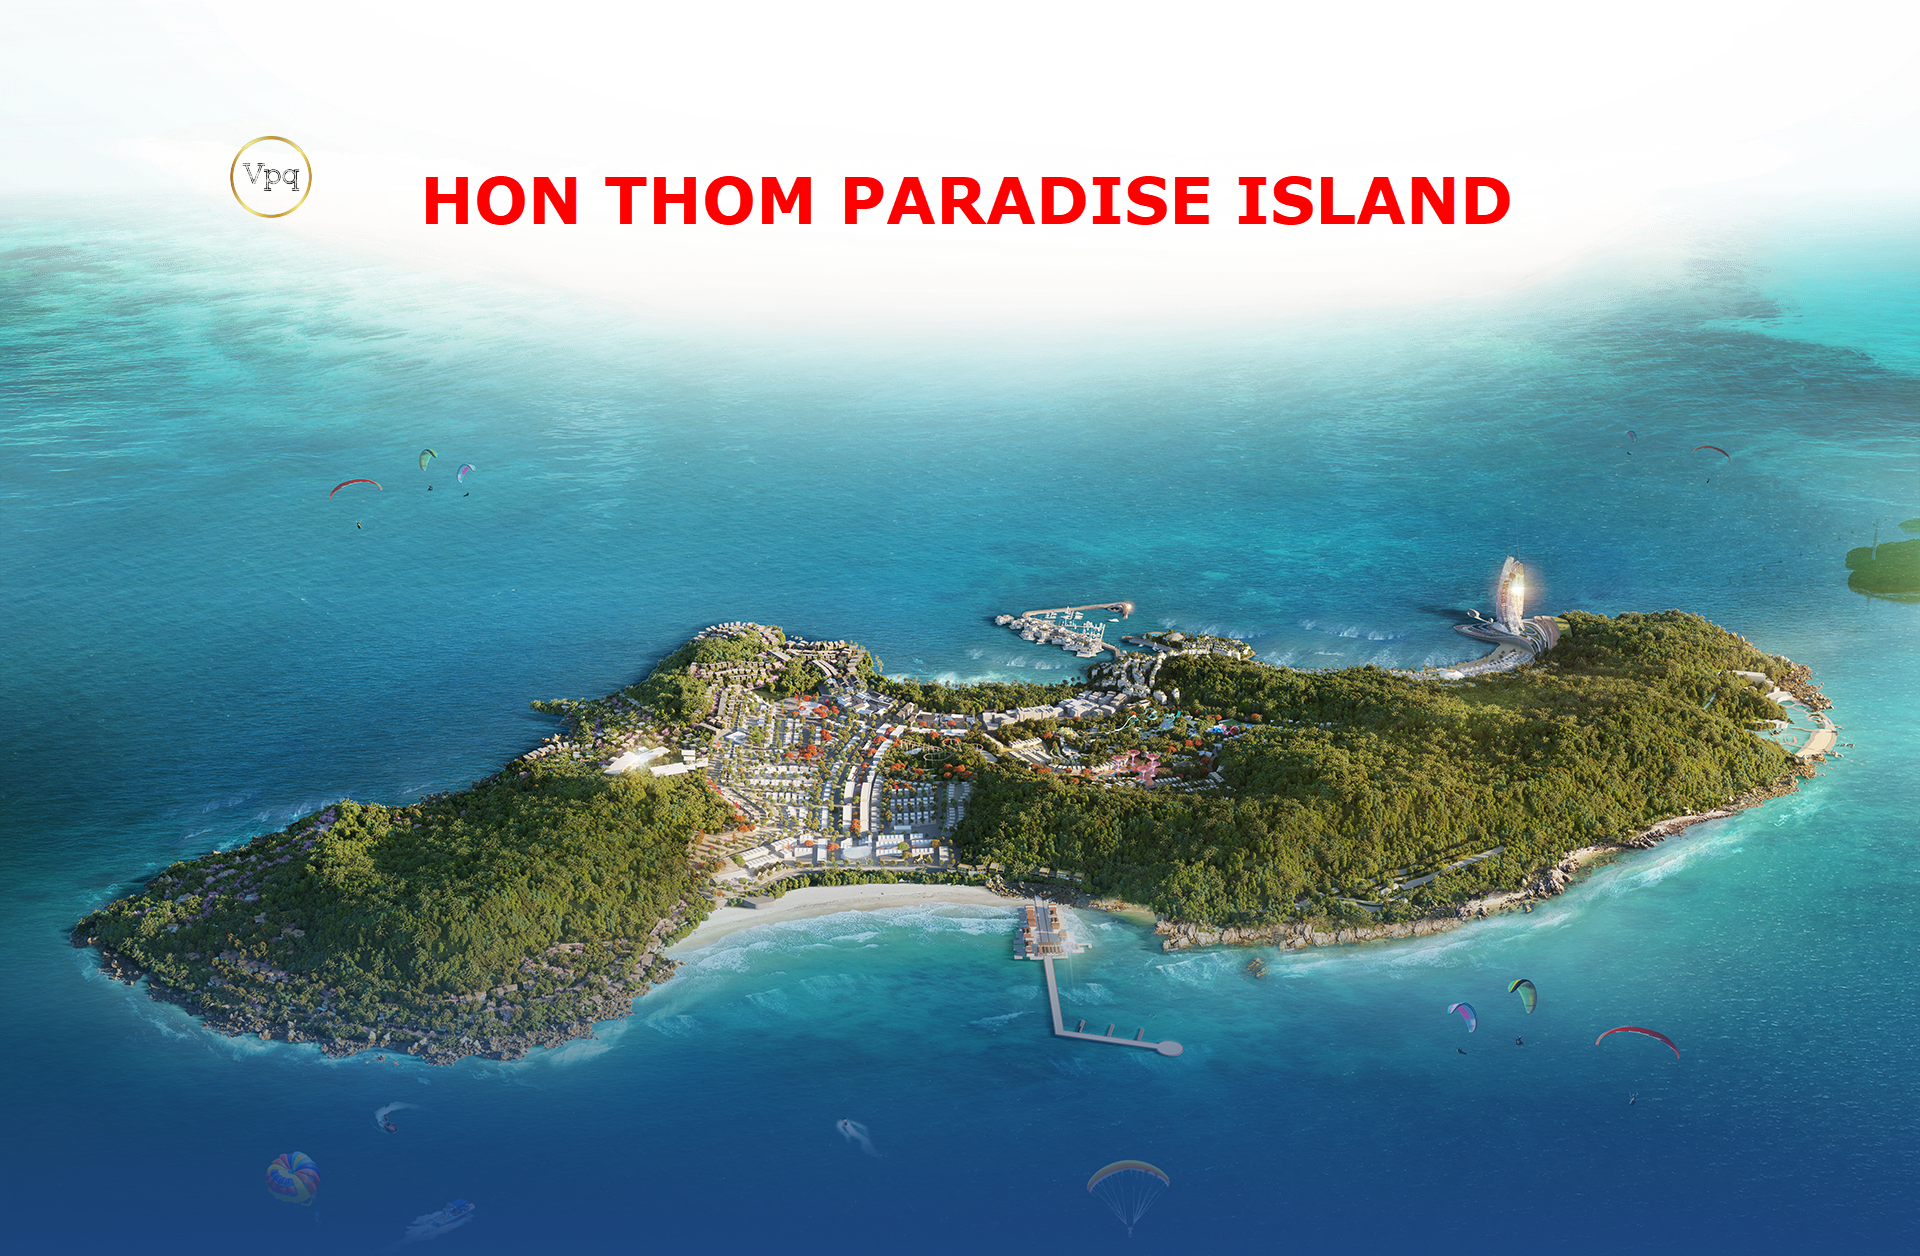 Phối cảnh Hon Thom Paradise Island